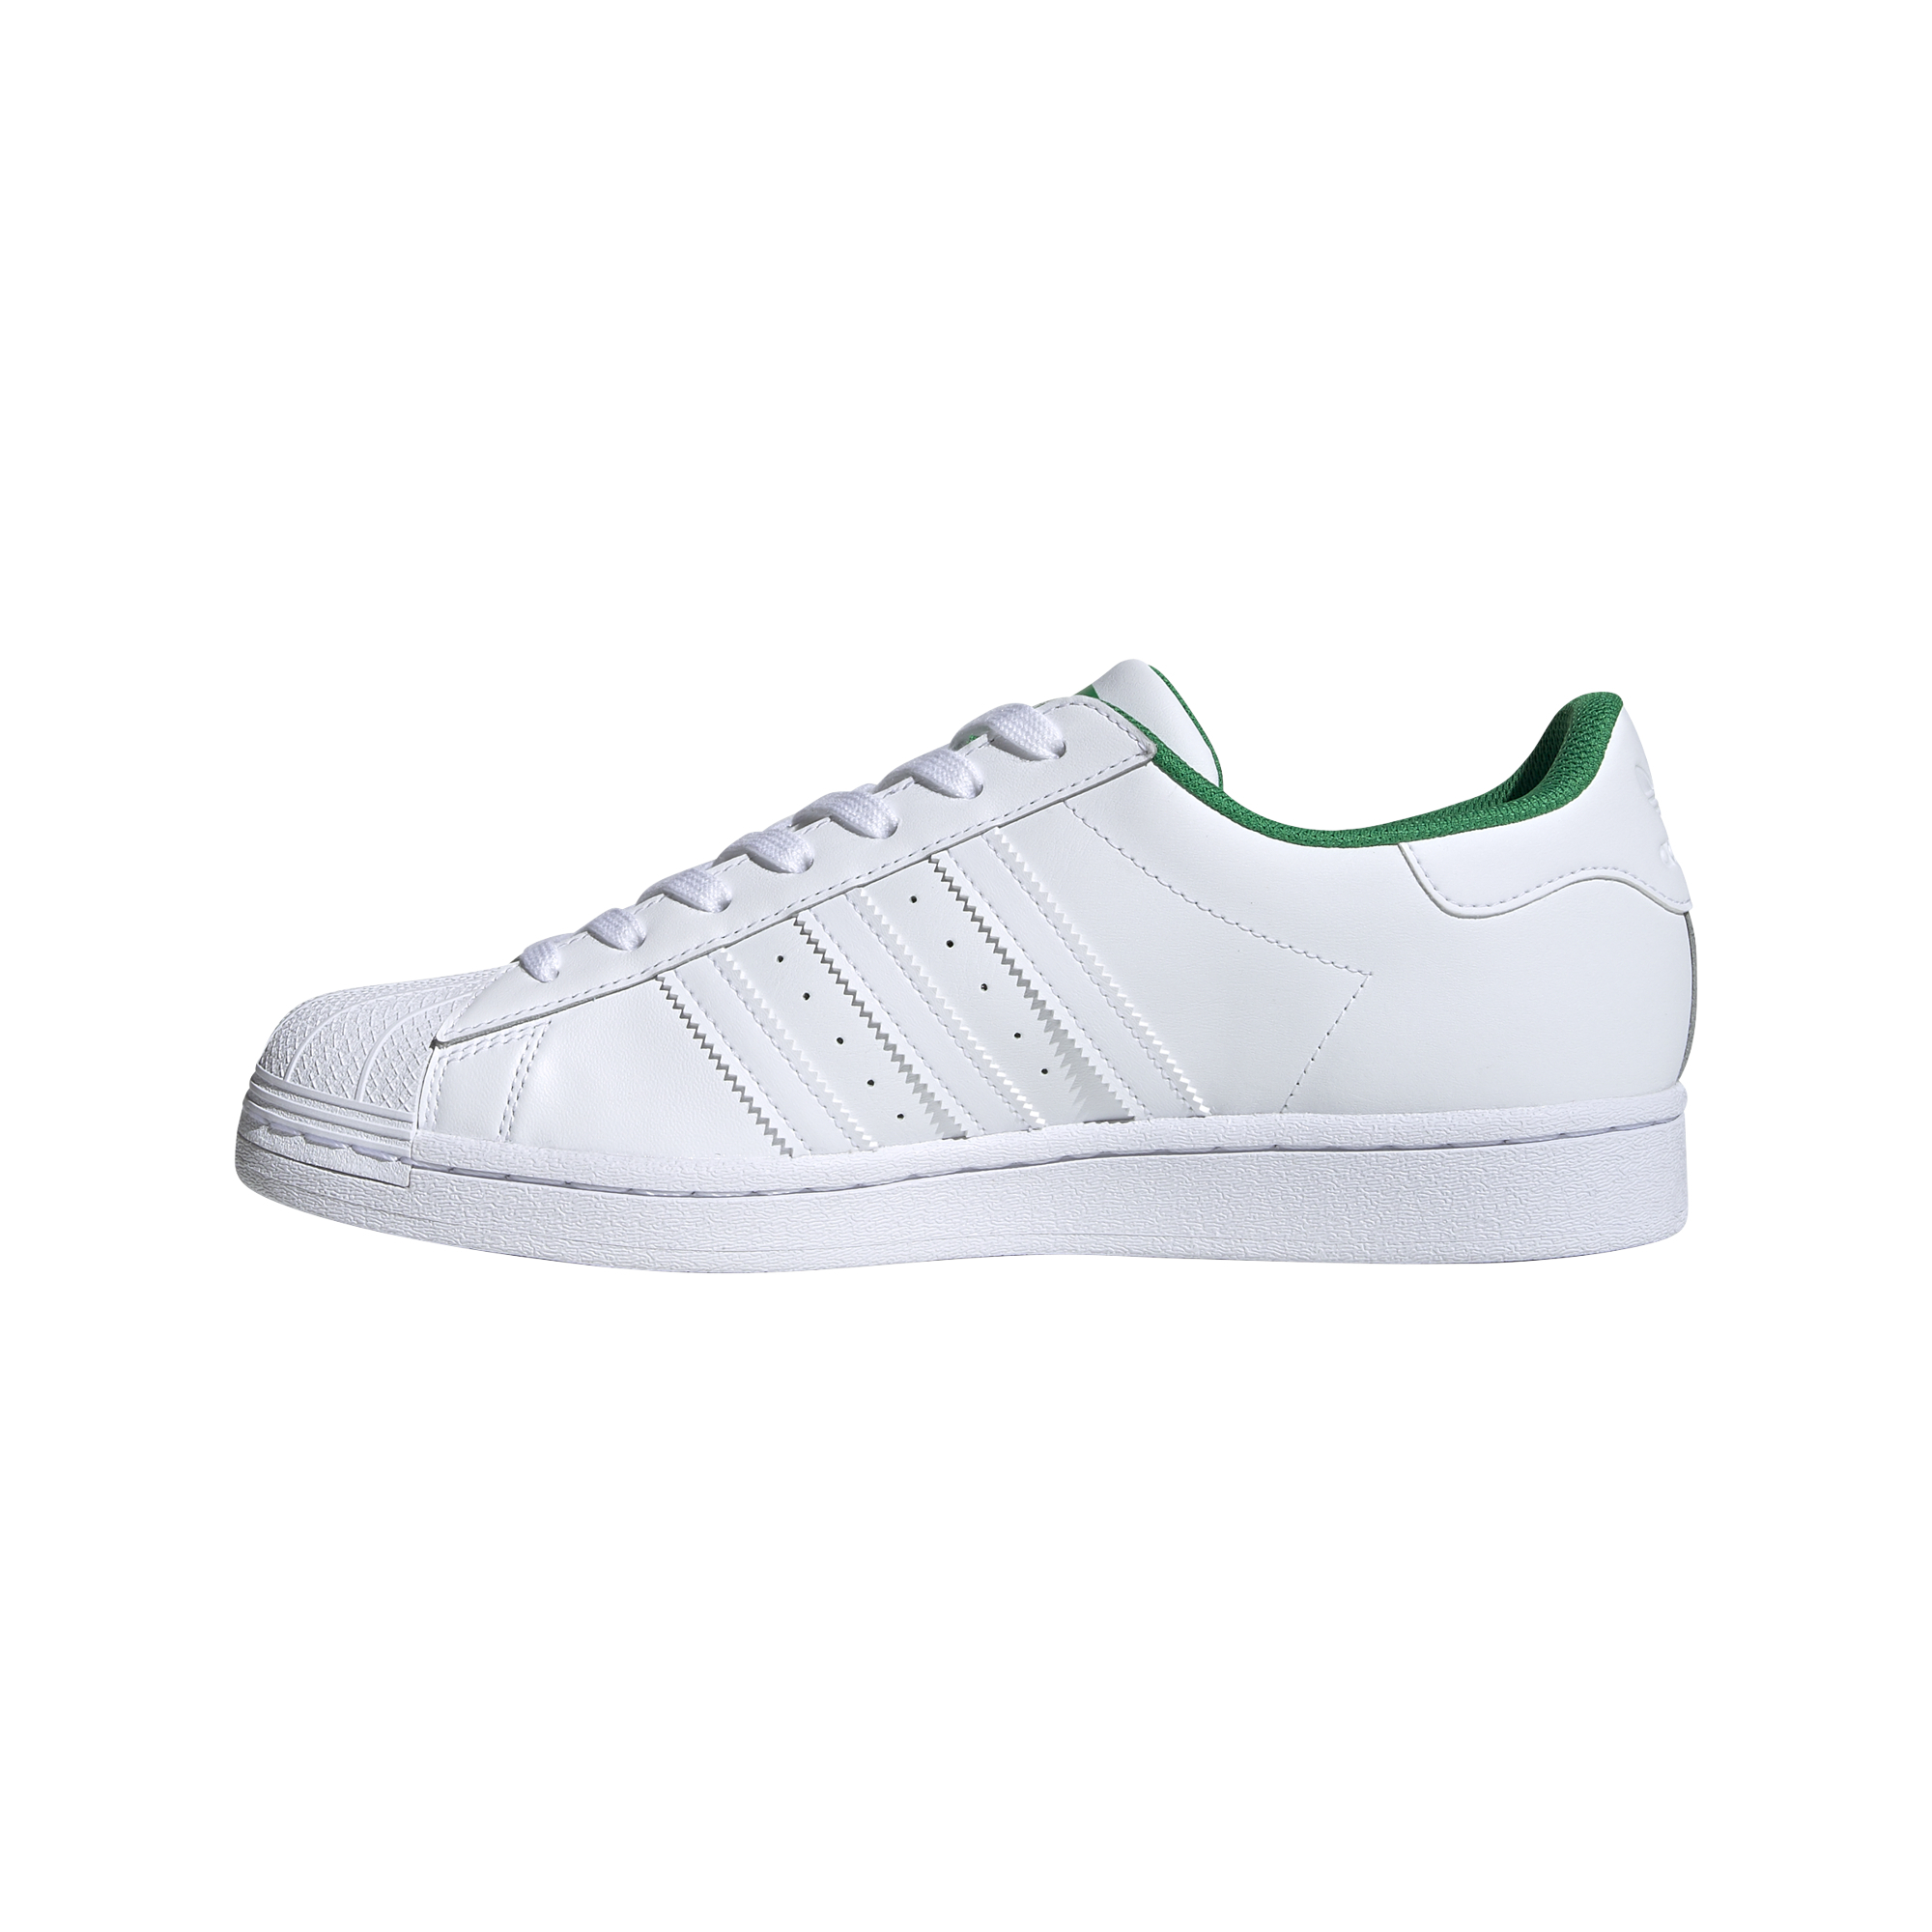 adidas Superstar Ftw White/ Ftw White/ Green 59518